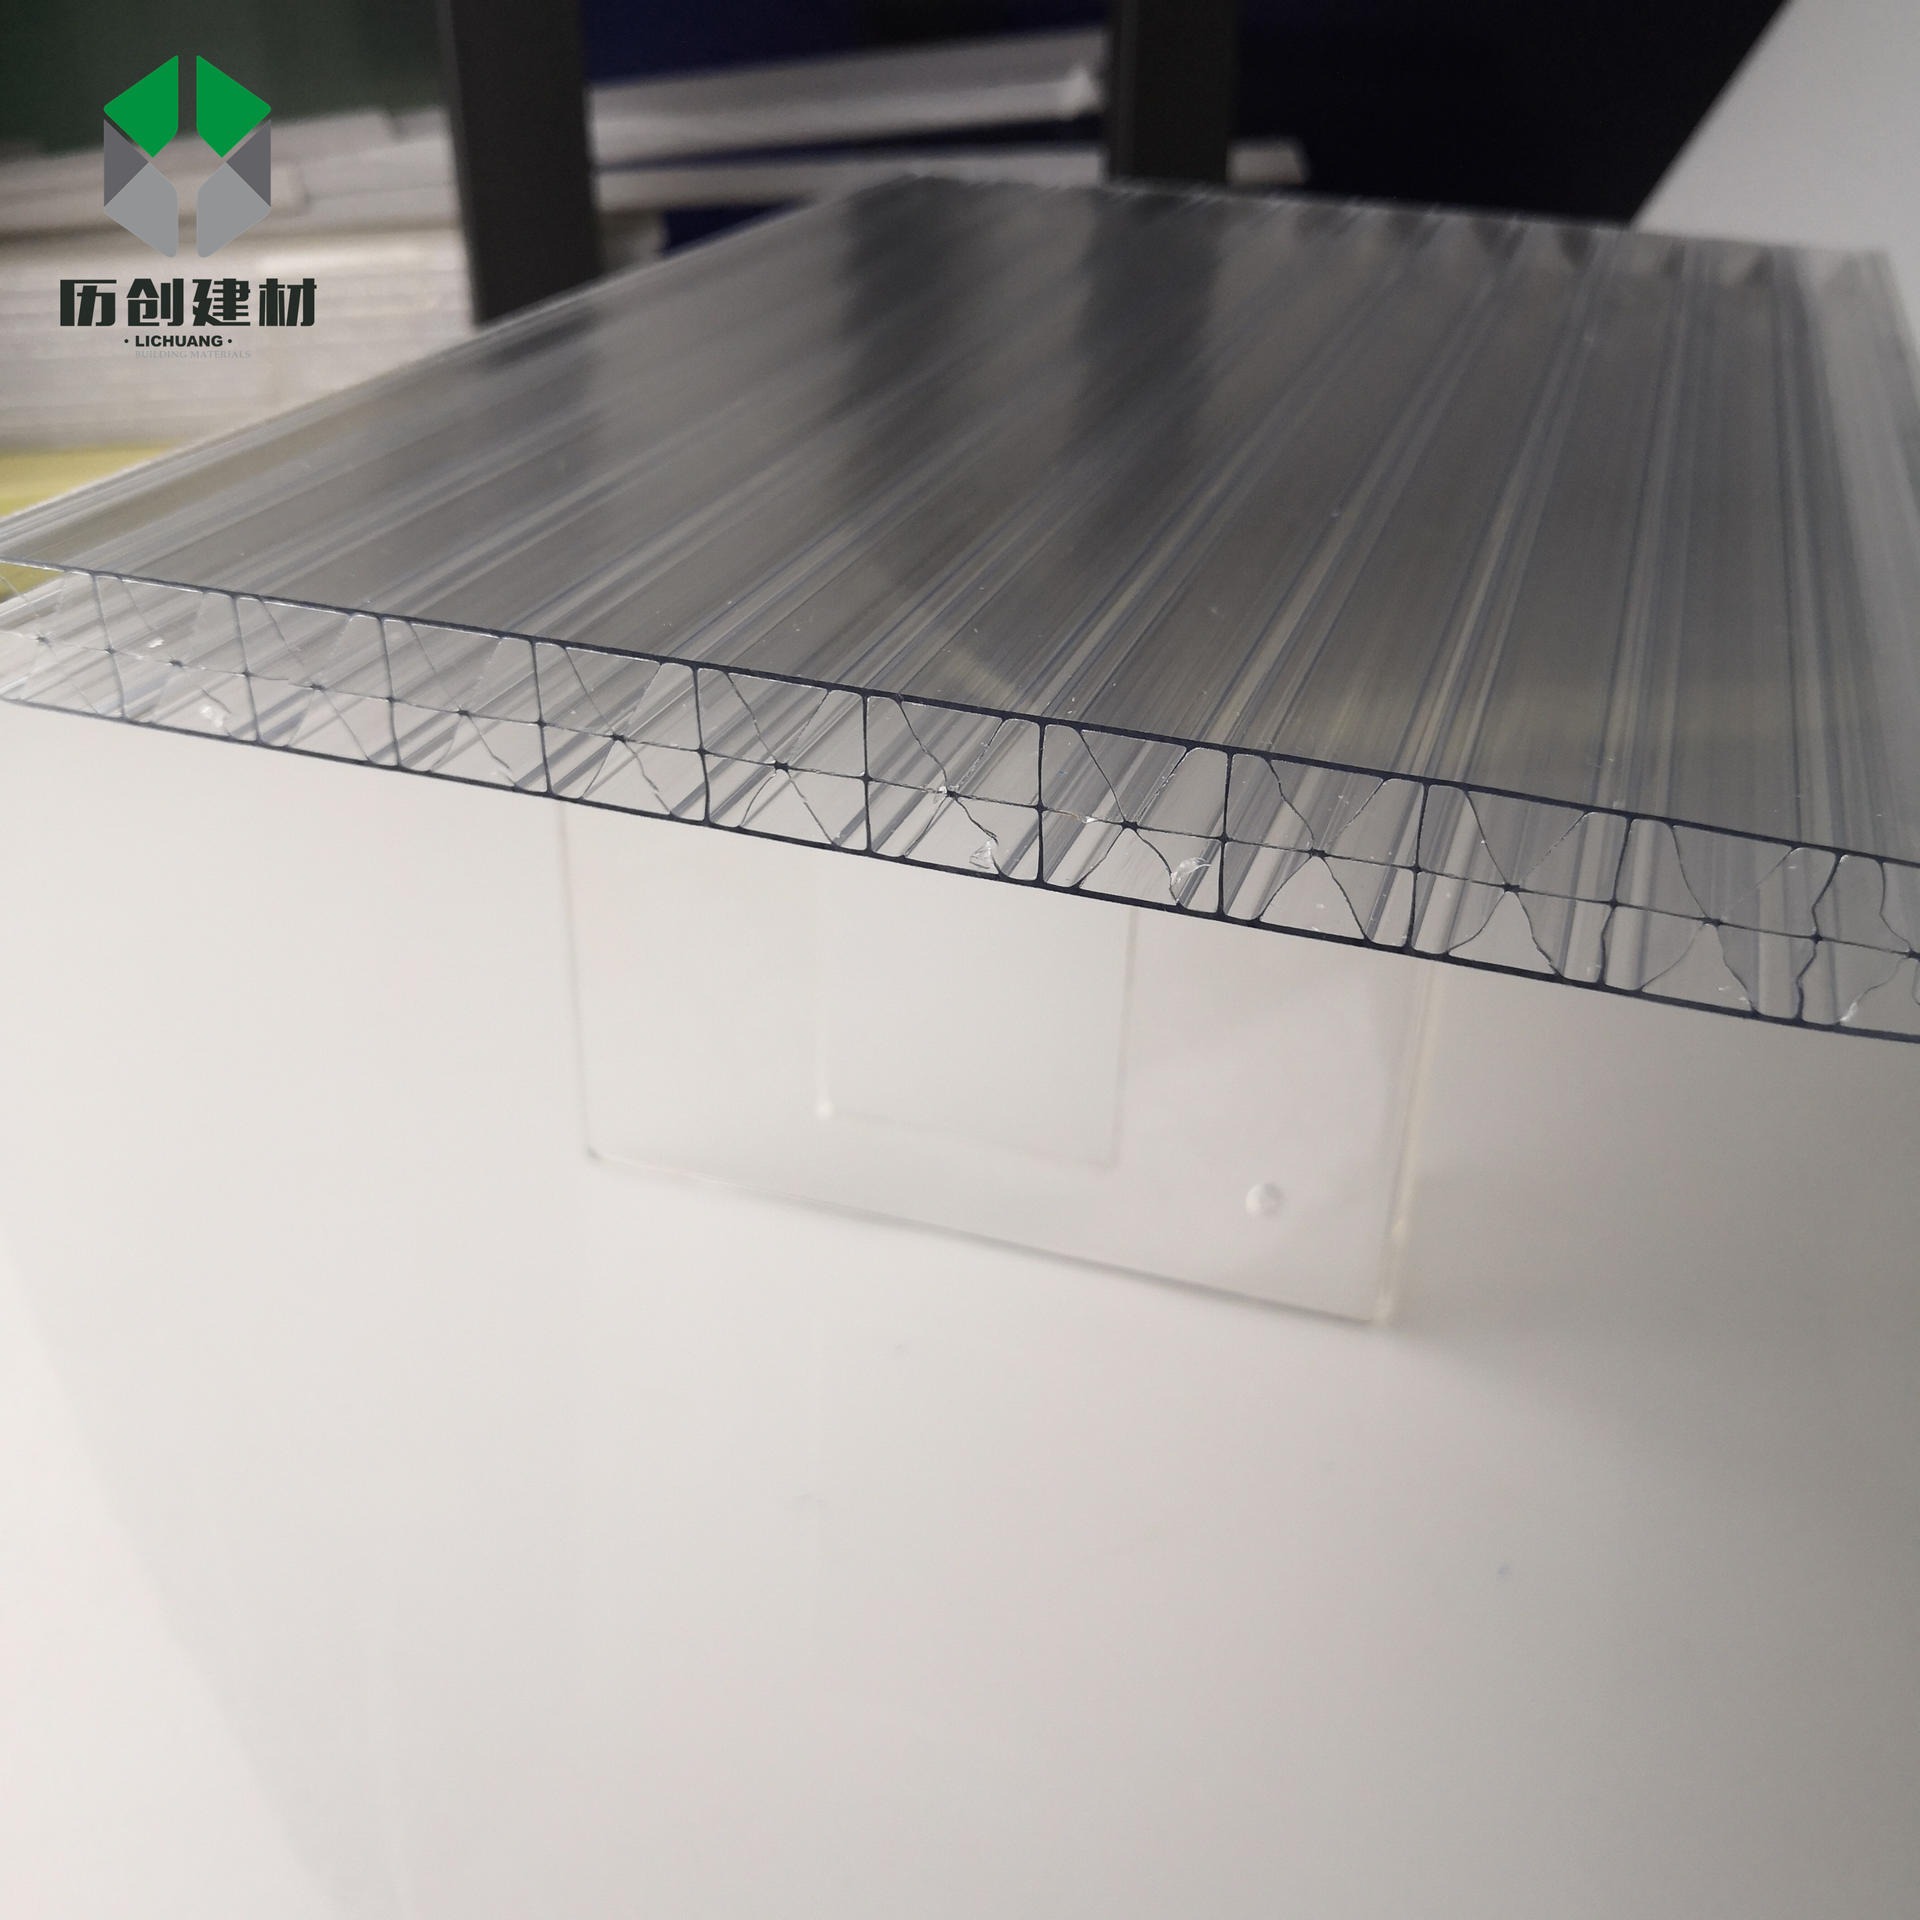 大棚透明阳光板 PC四层米字格板16mm工程中空板聚碳酸酯采光阳光板历创定制图片